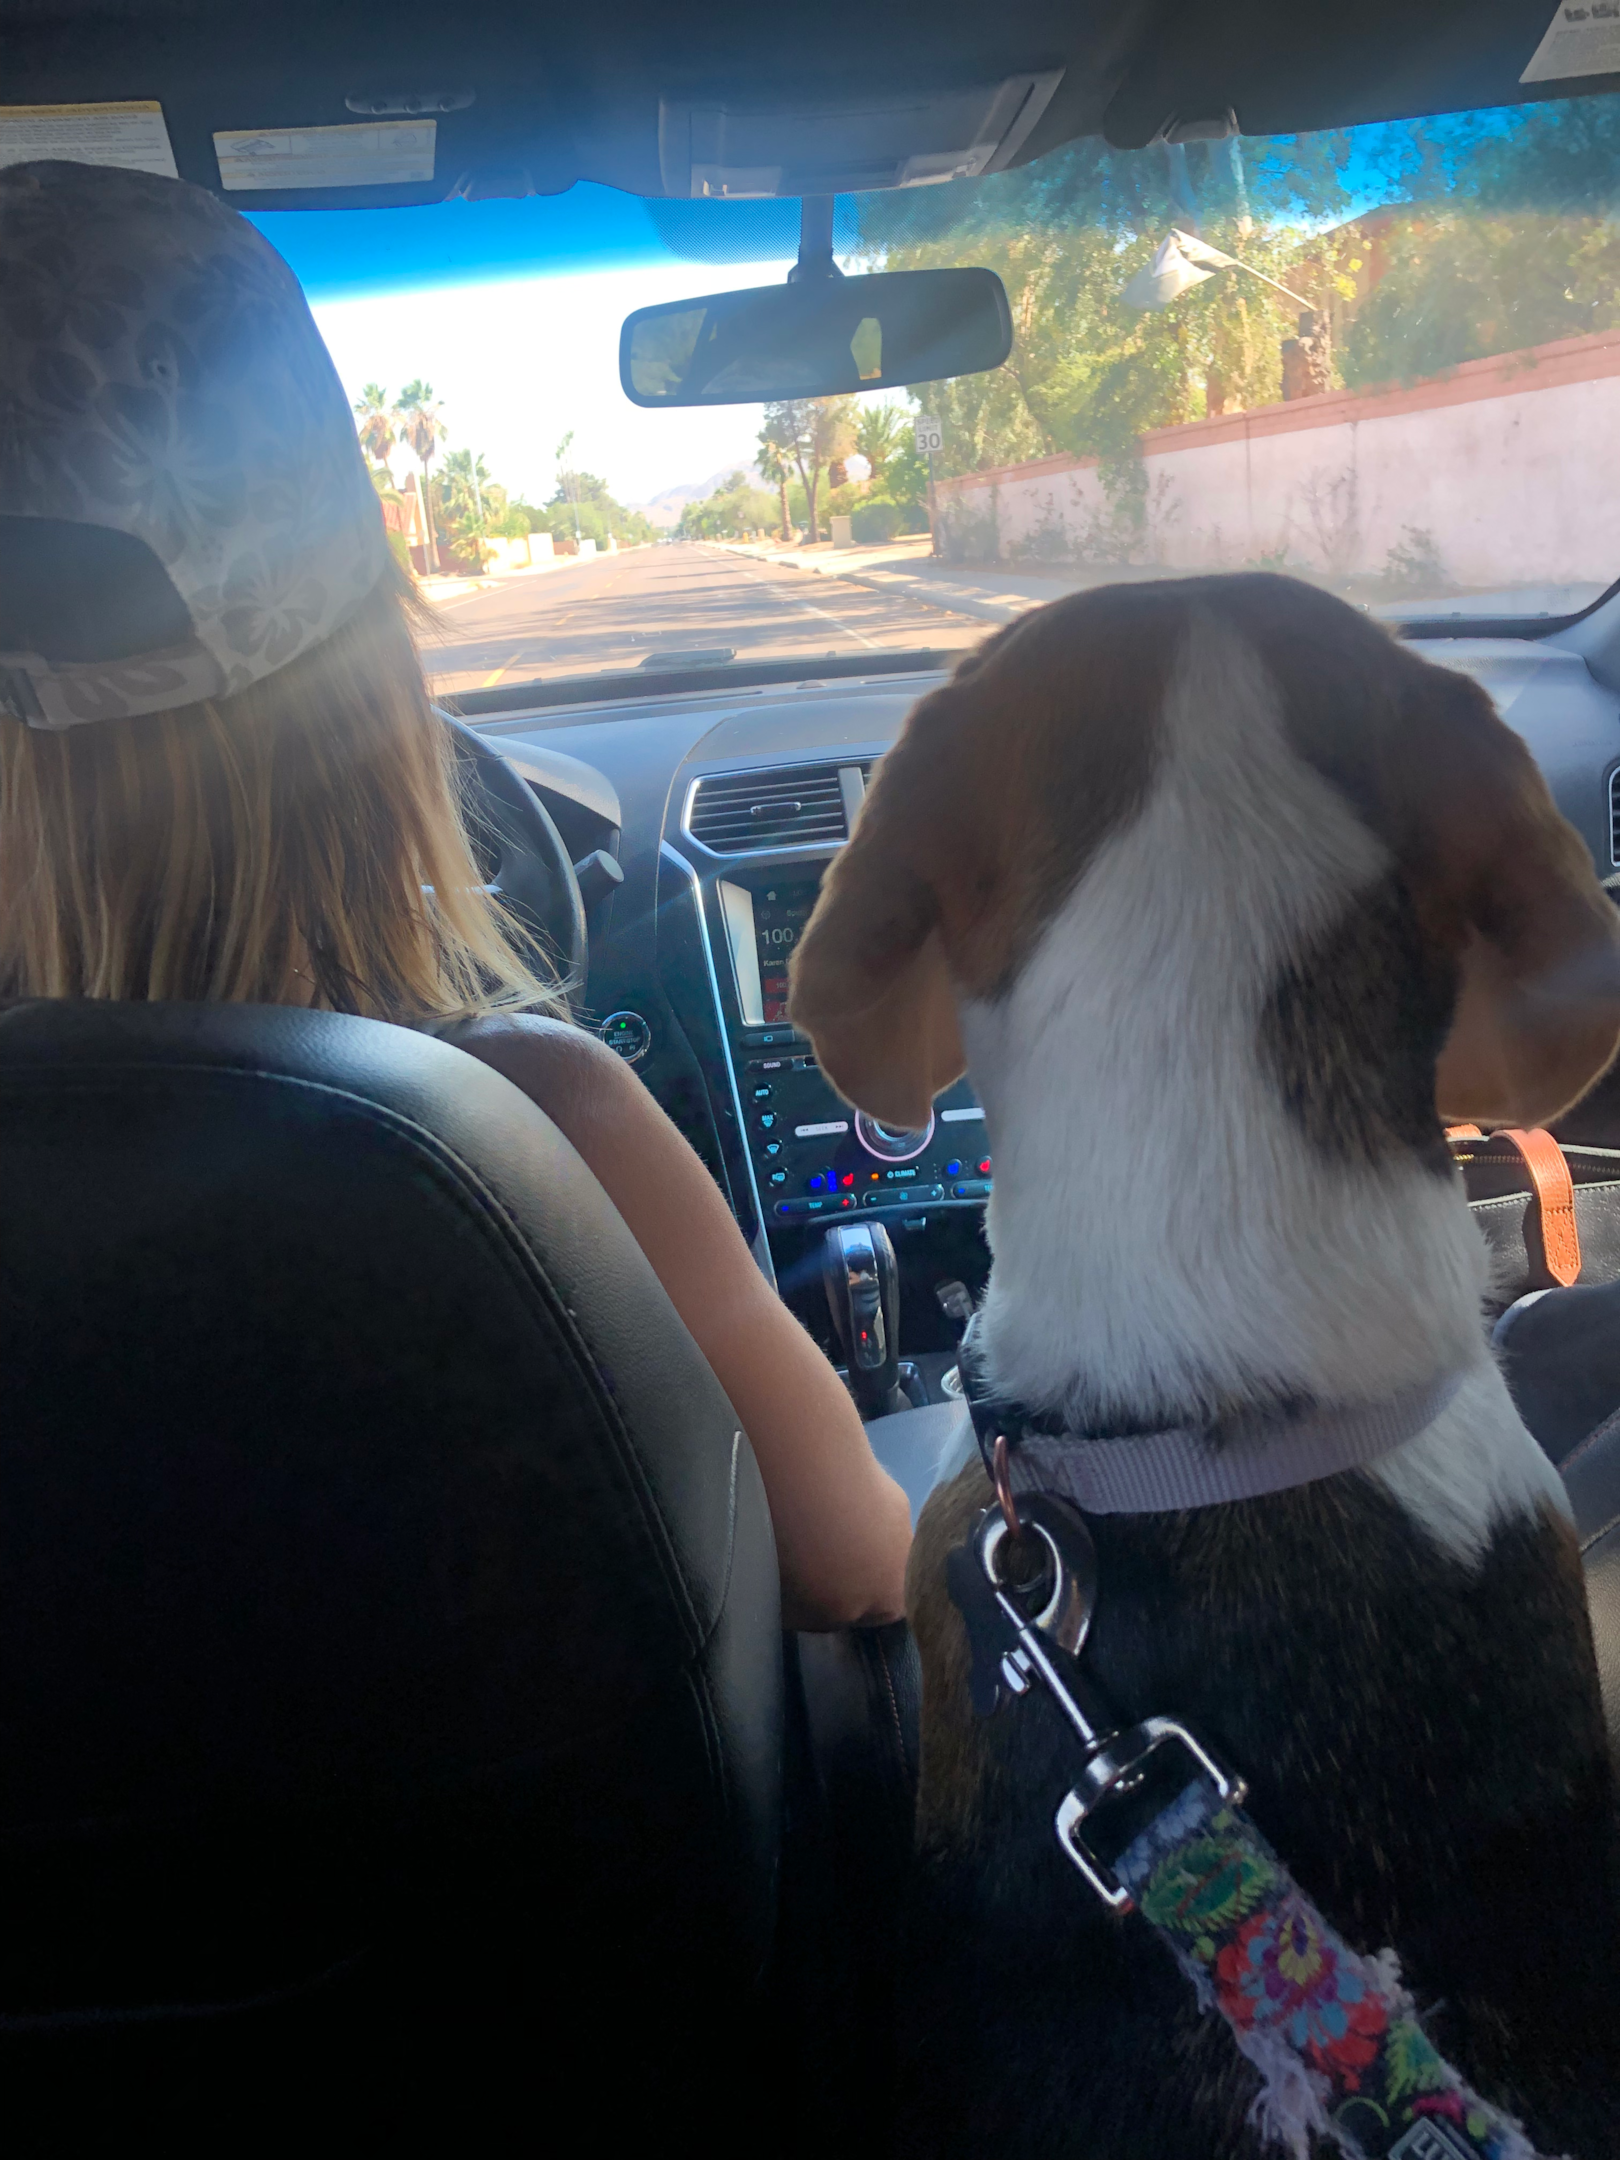 A beagle riding in a car for a joy ride